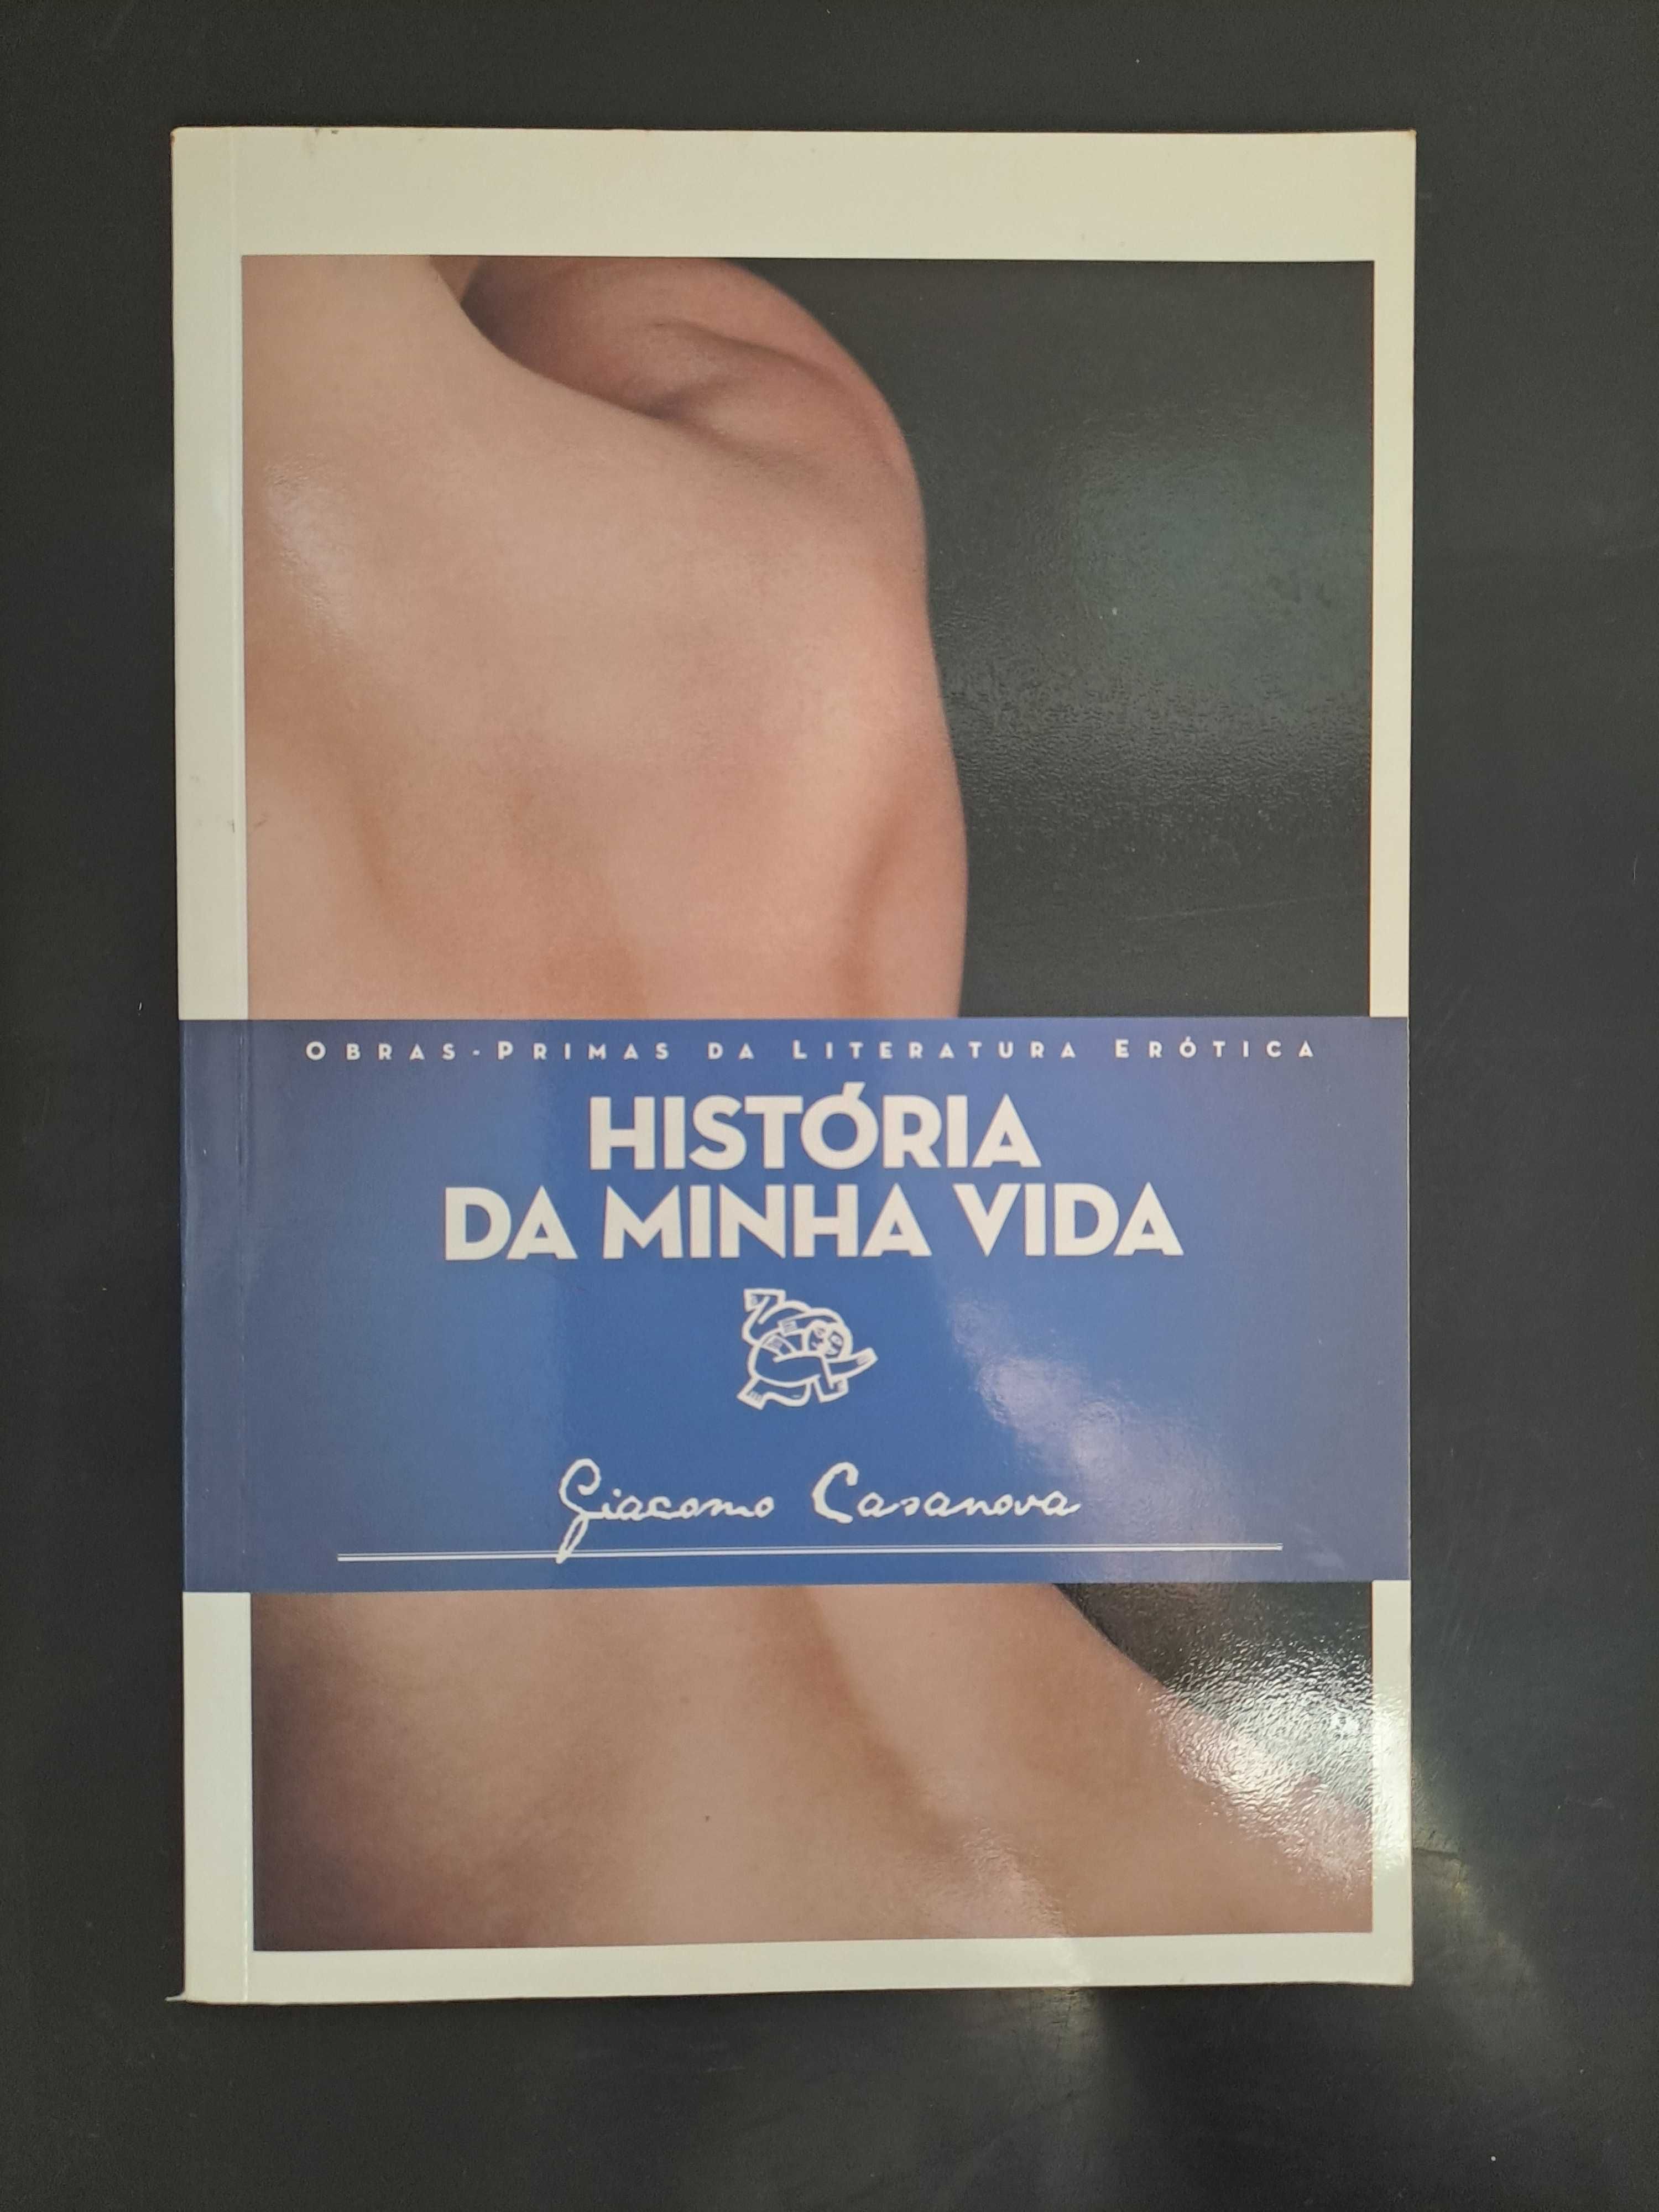 Livros Mulherzinhas, Espinosa, Pedrito Coelho